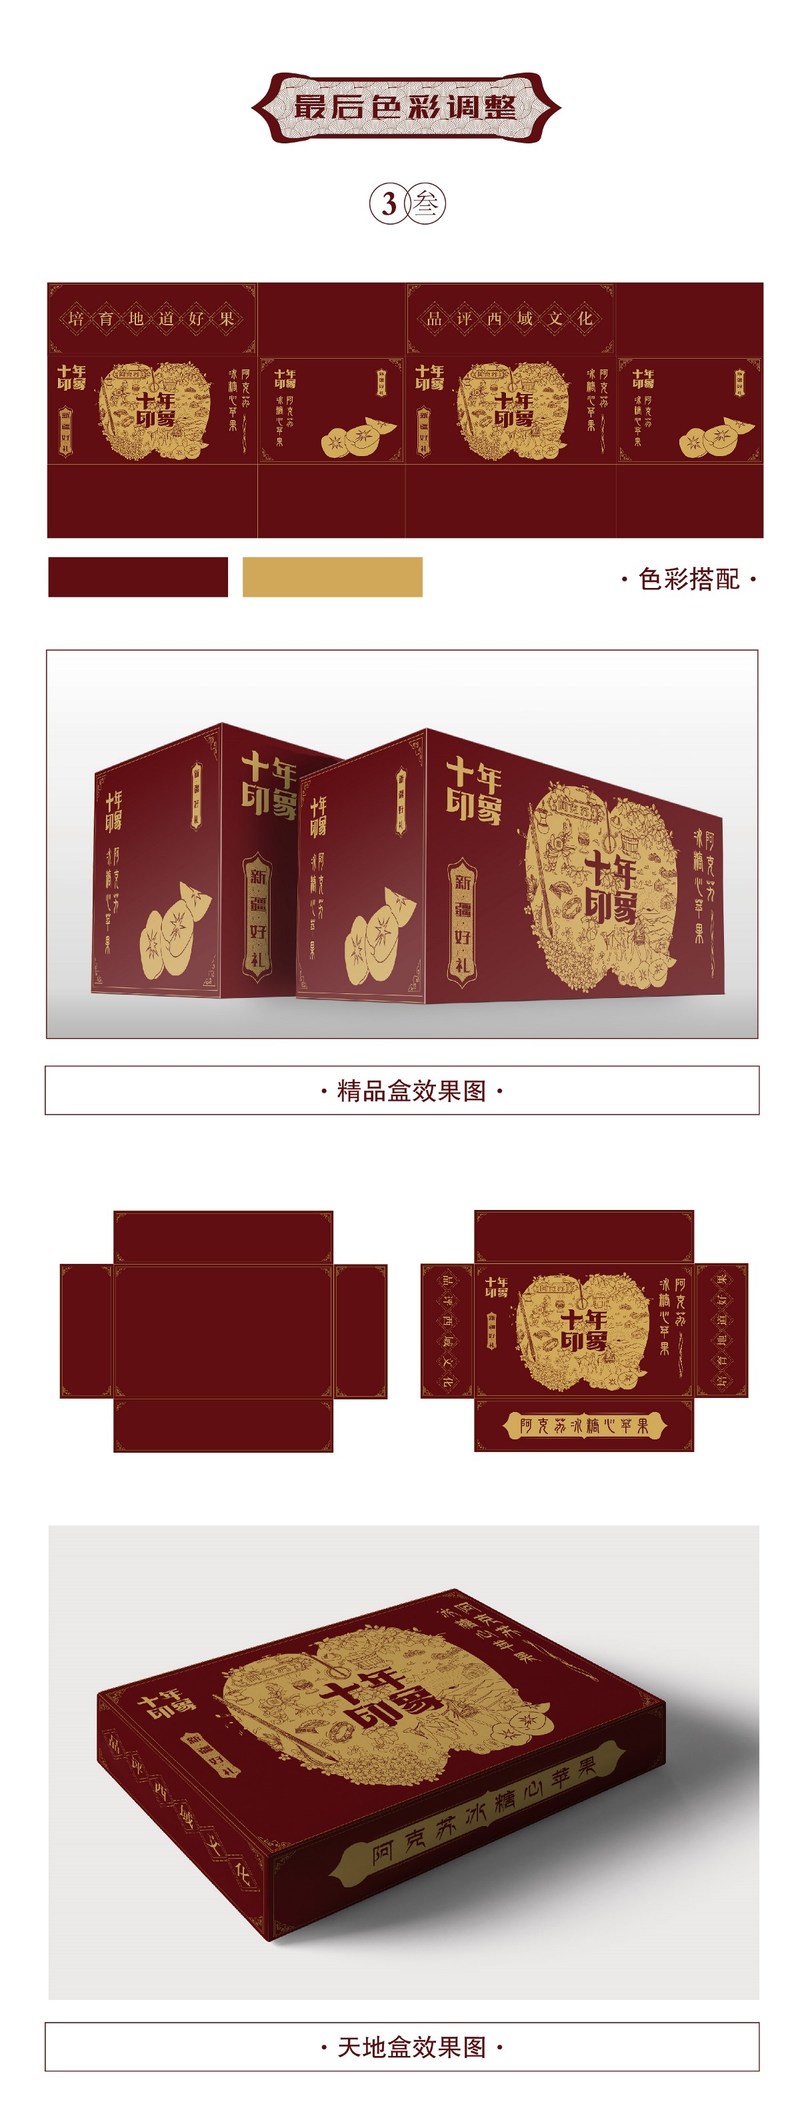 新疆苹果新年礼盒包装与策划